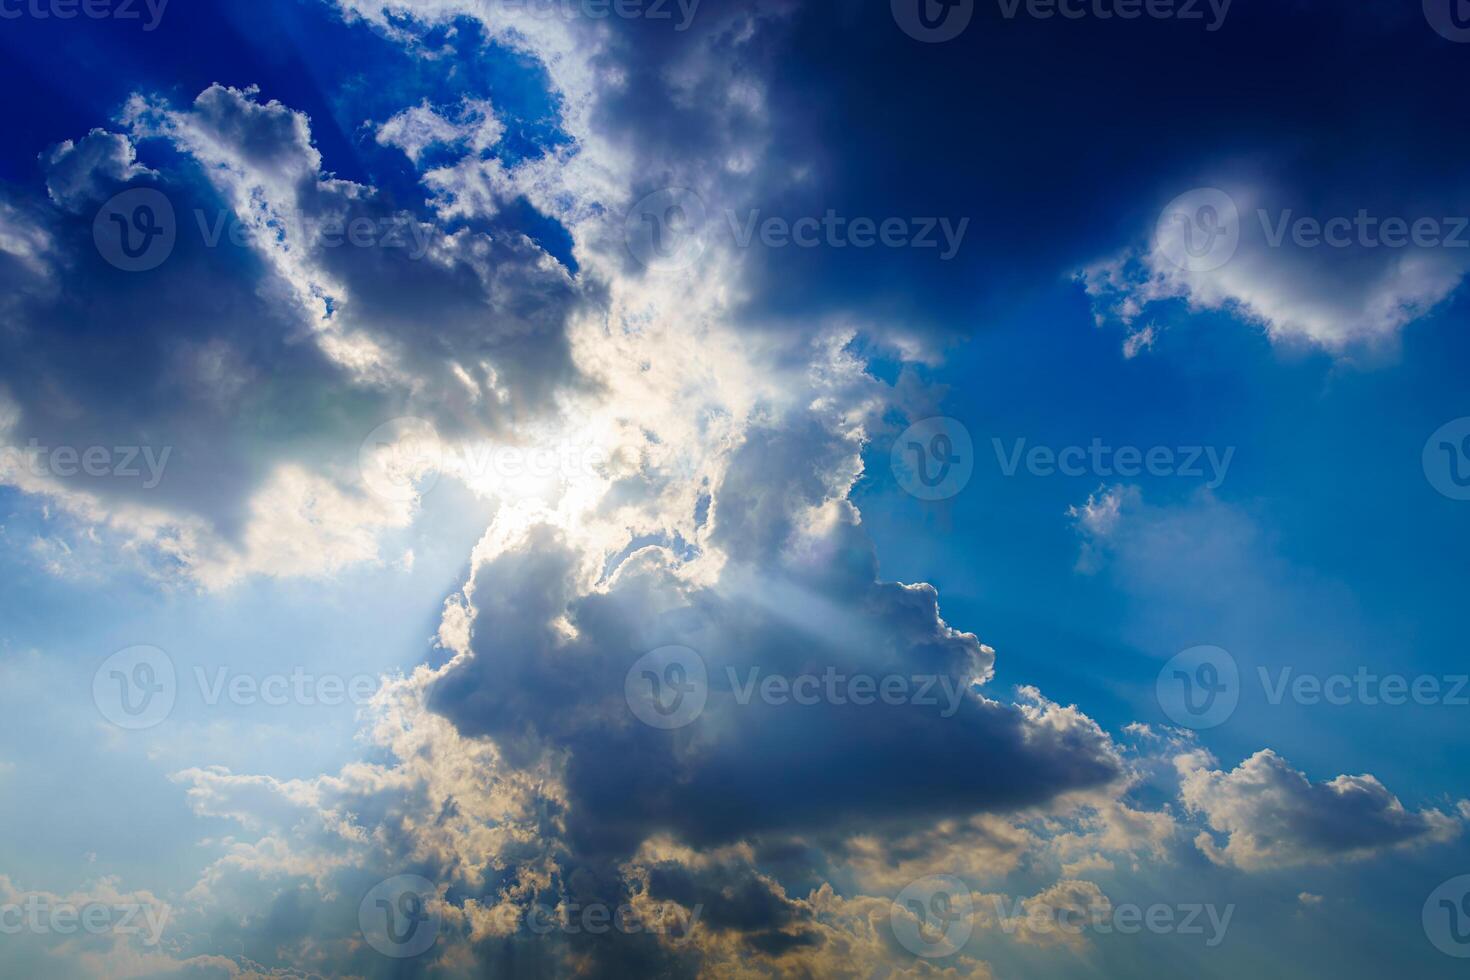 rayons de soleil rupture par spectaculaire cumulus des nuages. changement de temps. espérer ou religion concept. photo